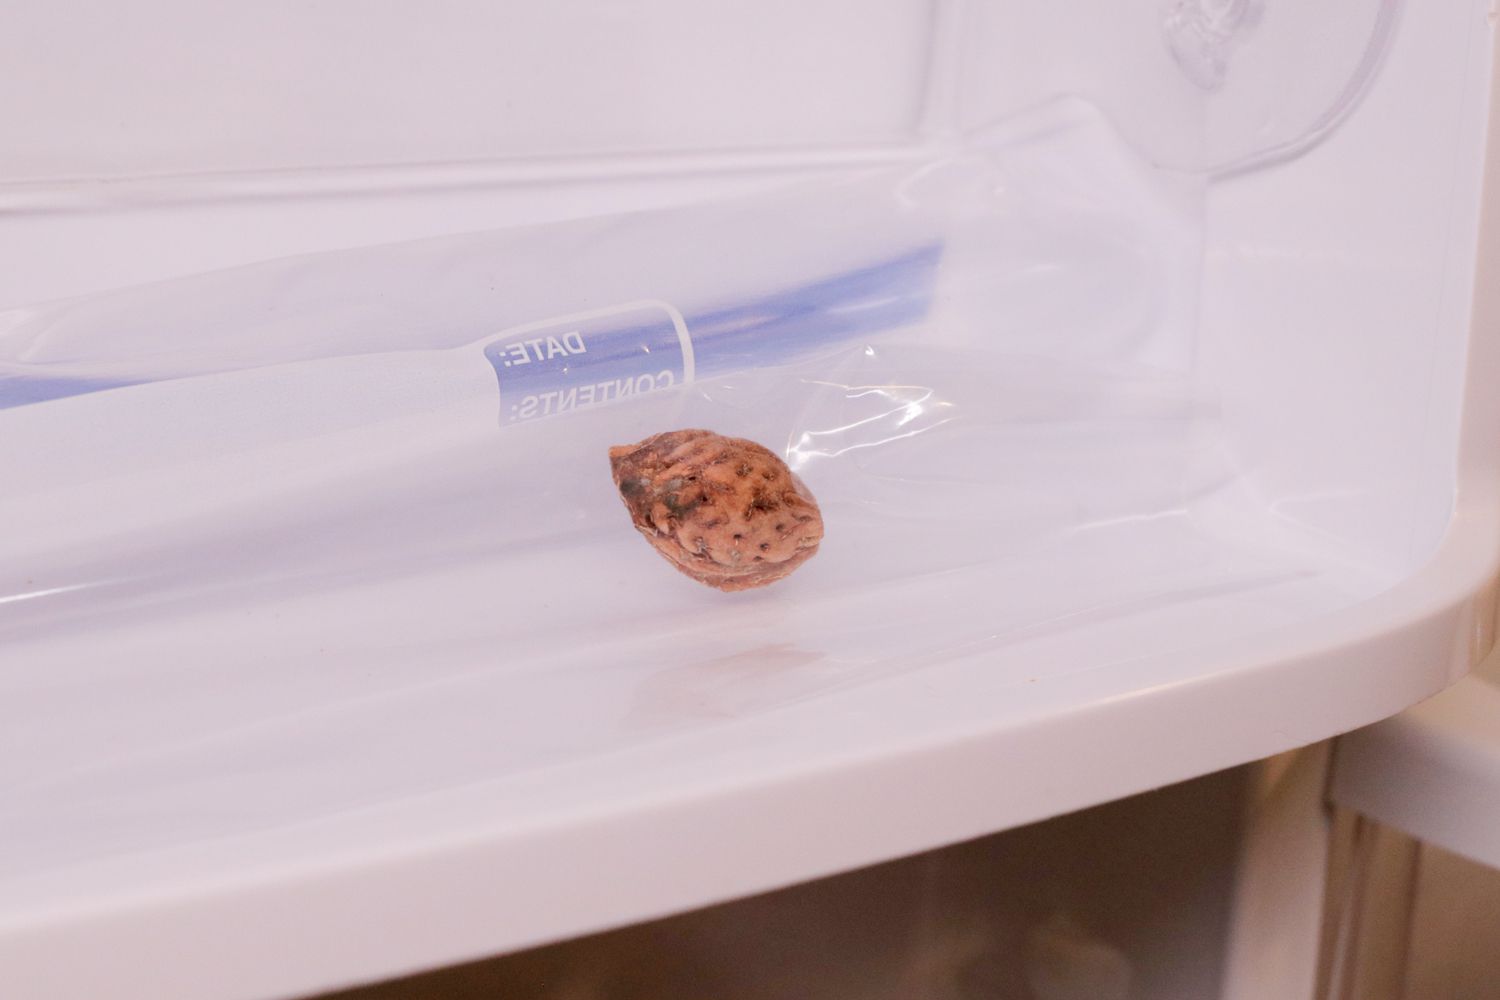 Pfirsichsamen in einer Plastiktüte im Kühlschrank zur Kältebehandlung